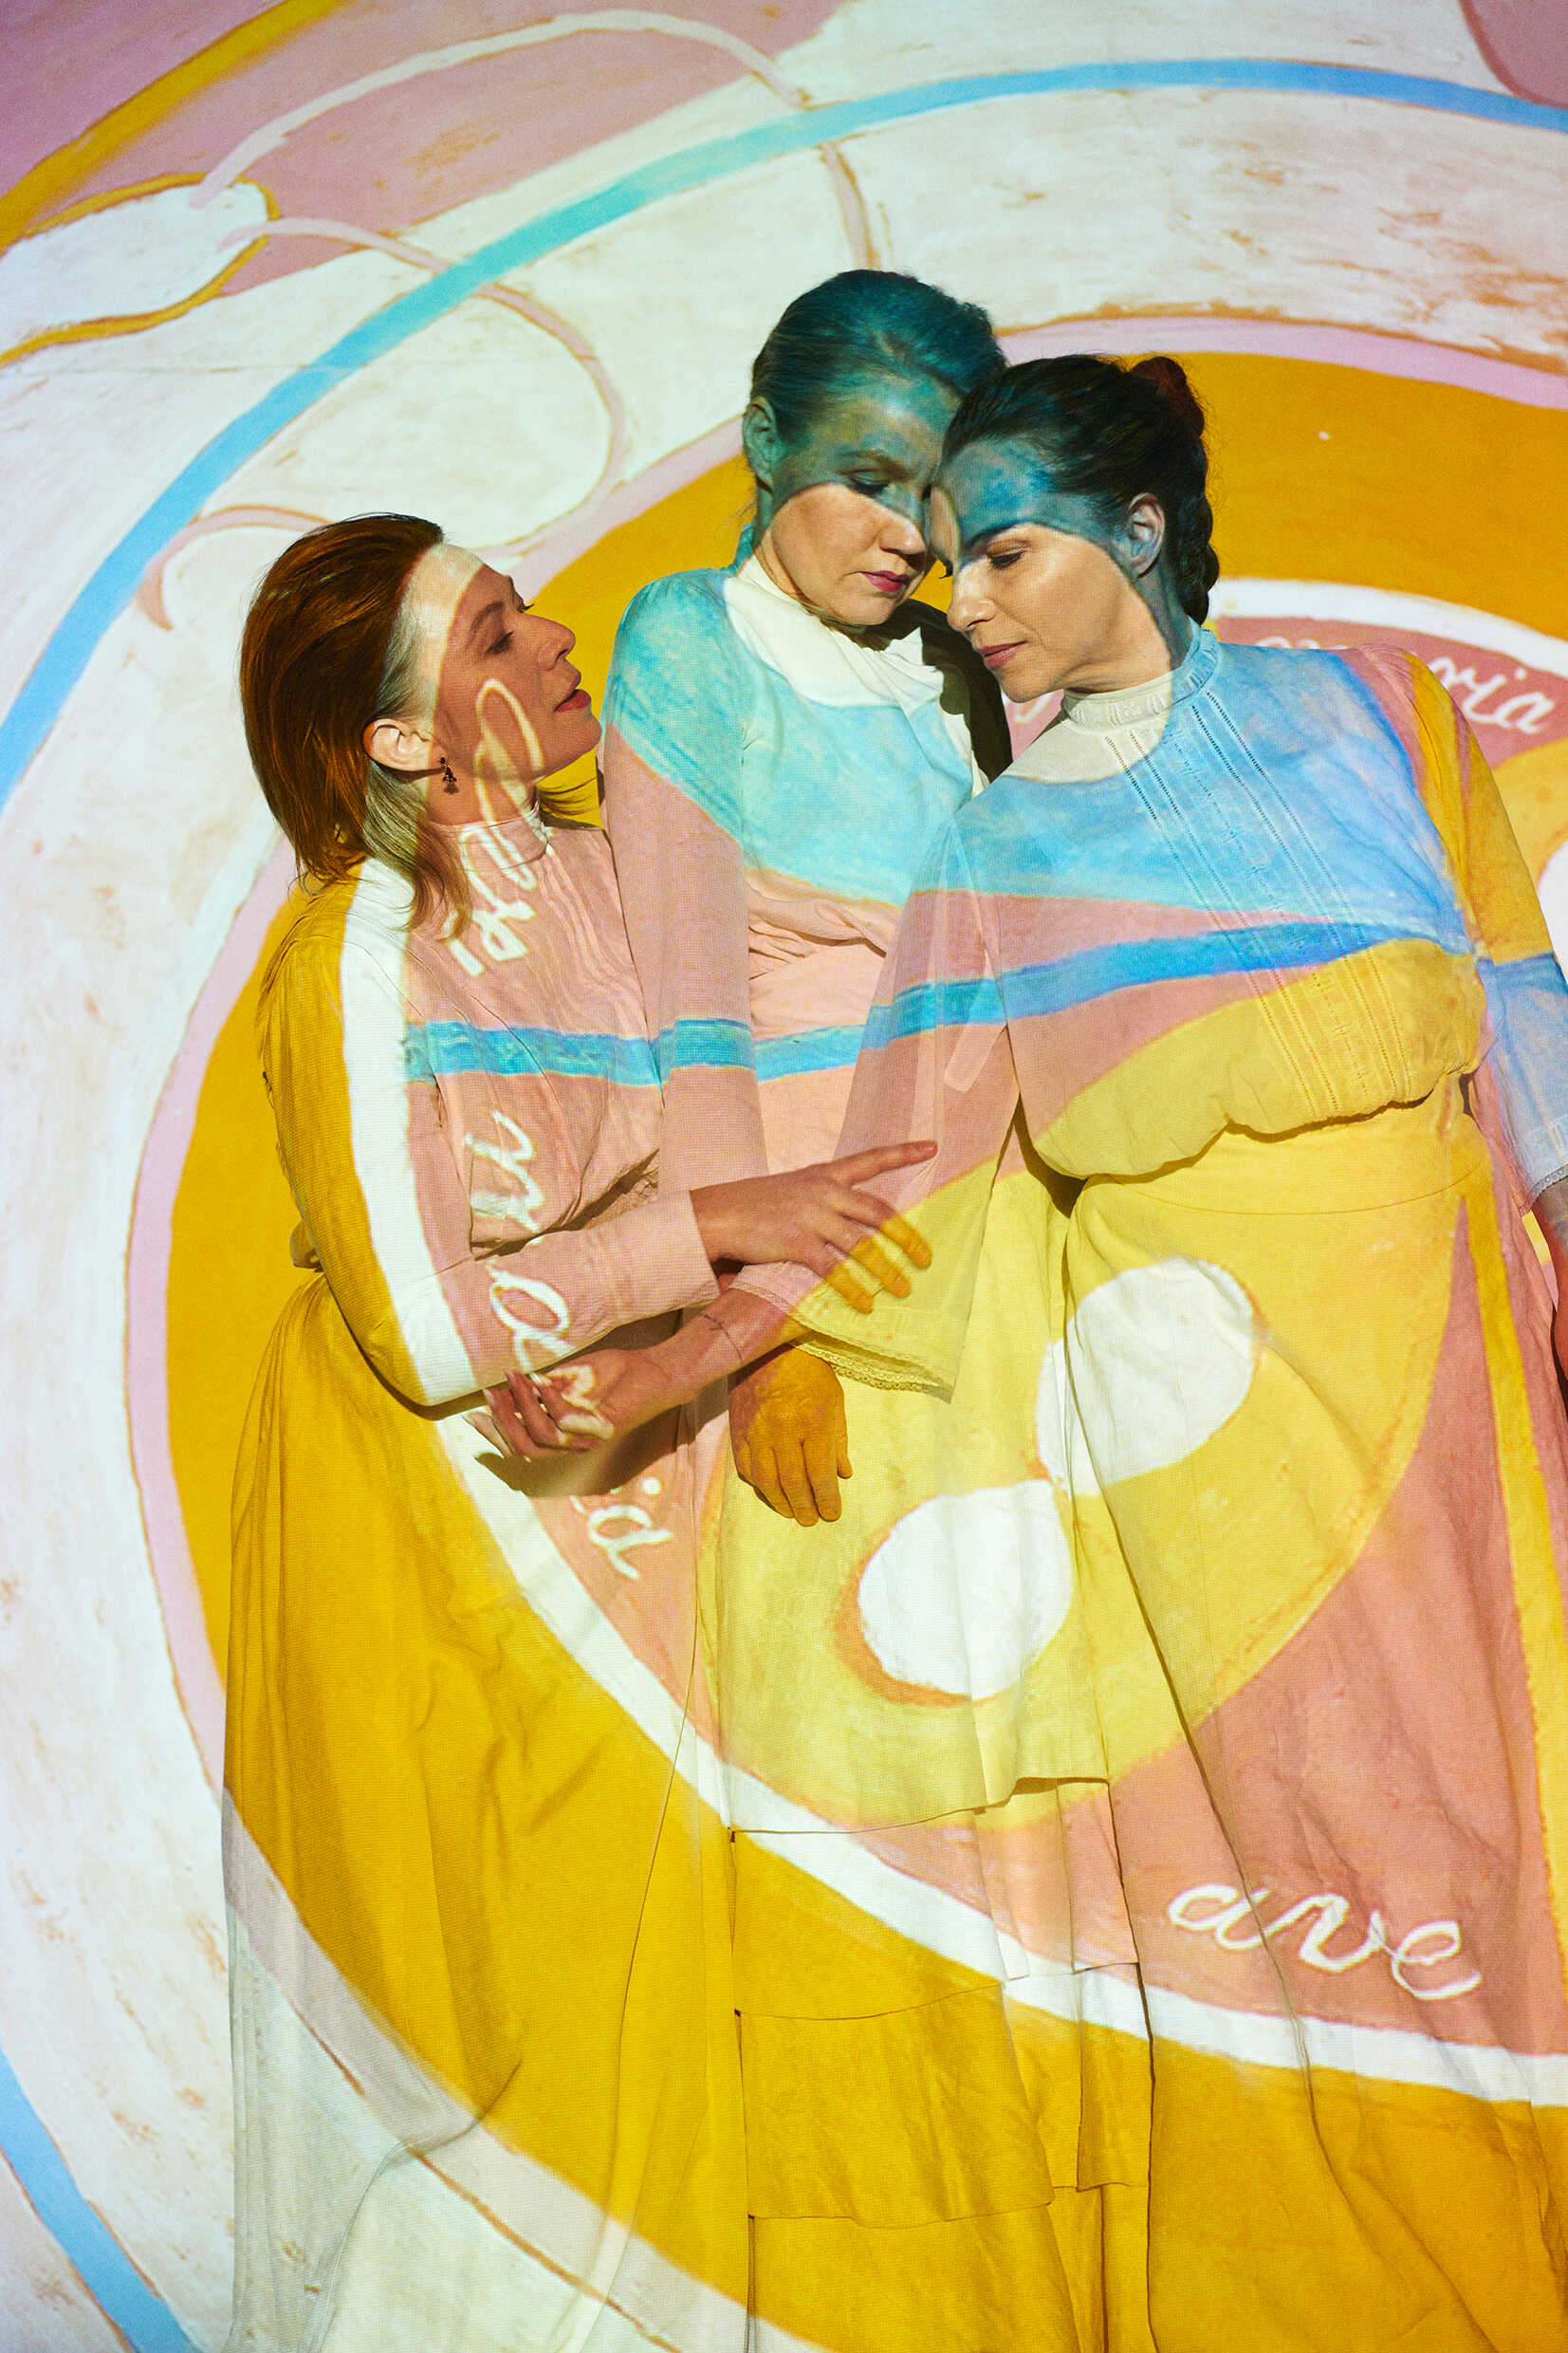 Tre kvinnor ser ut att vara inuti en målning i olika abstrakta mönster. 